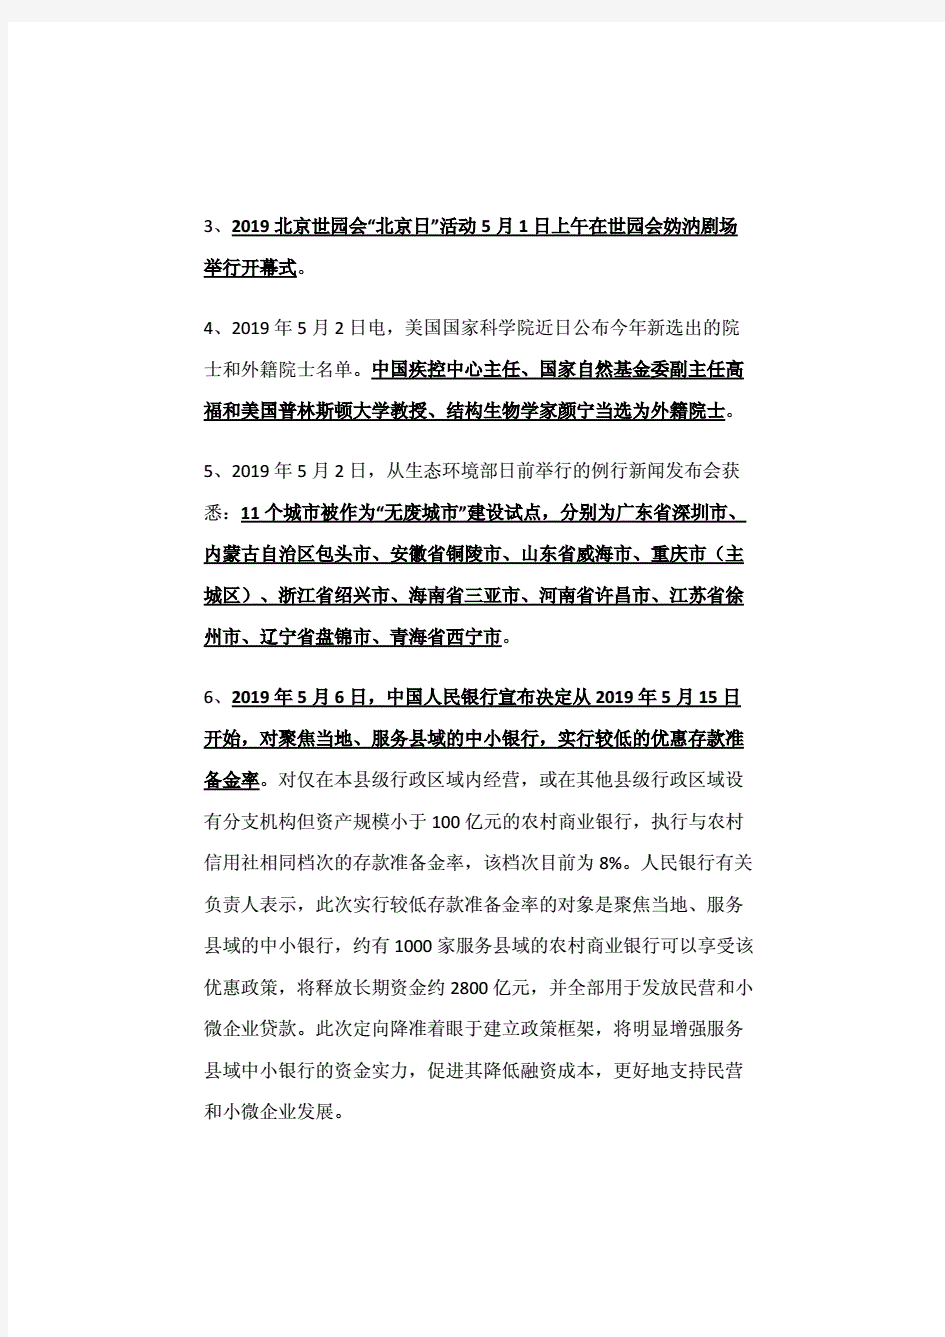 2019年5月—10月国内外重大时政热点精选(完整版).